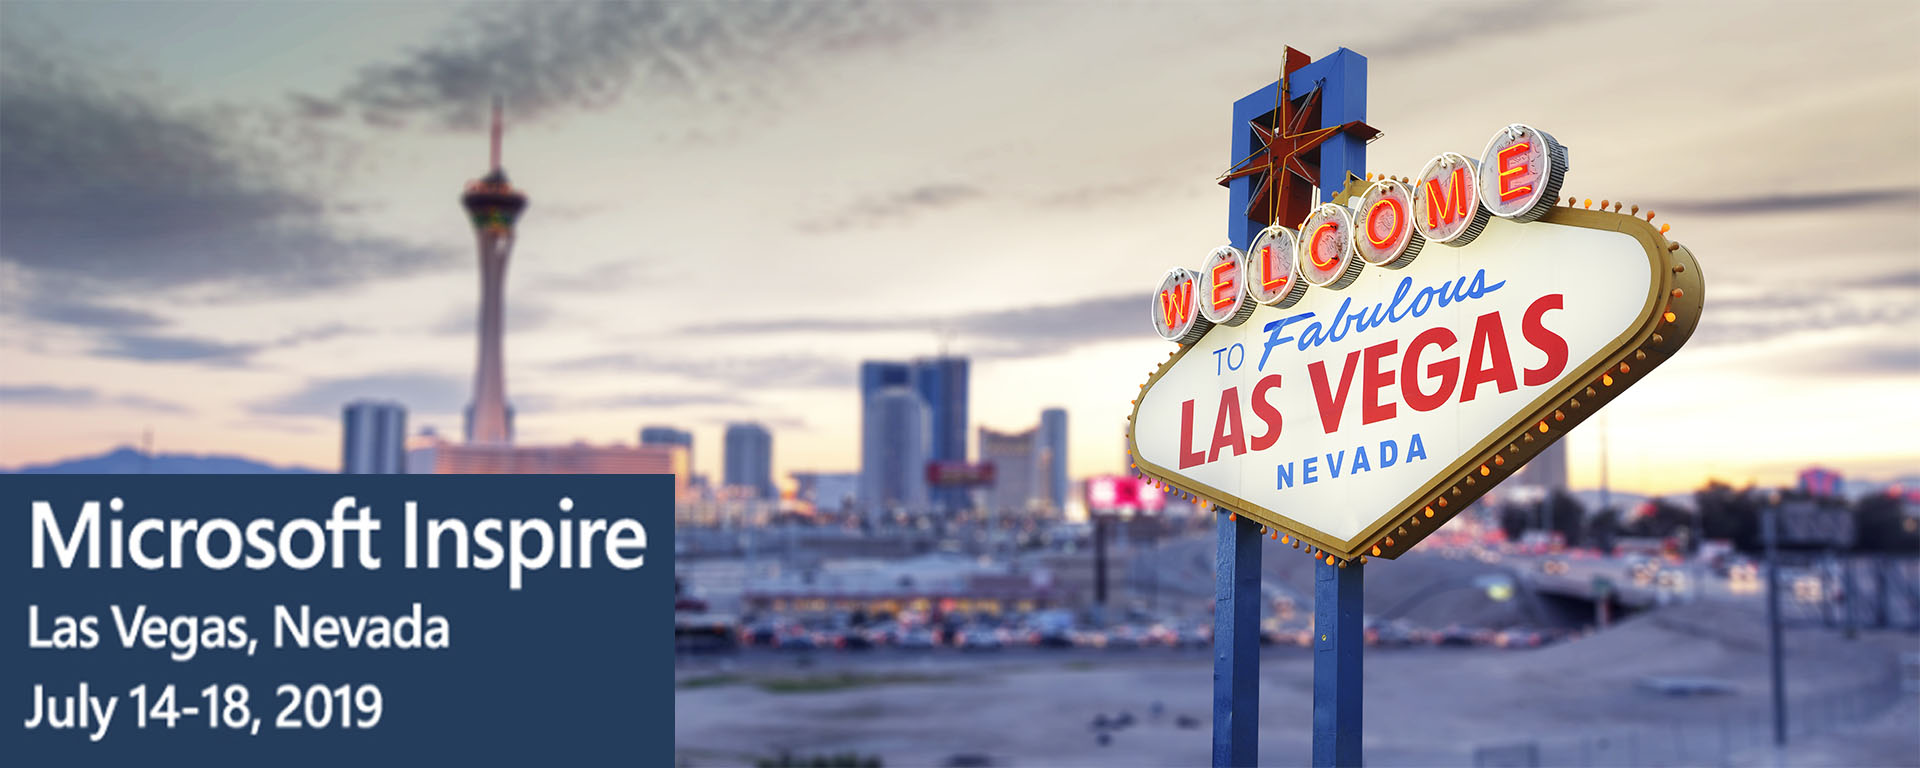 Microsoft Inspire details overlaid on Las Vegas skyline